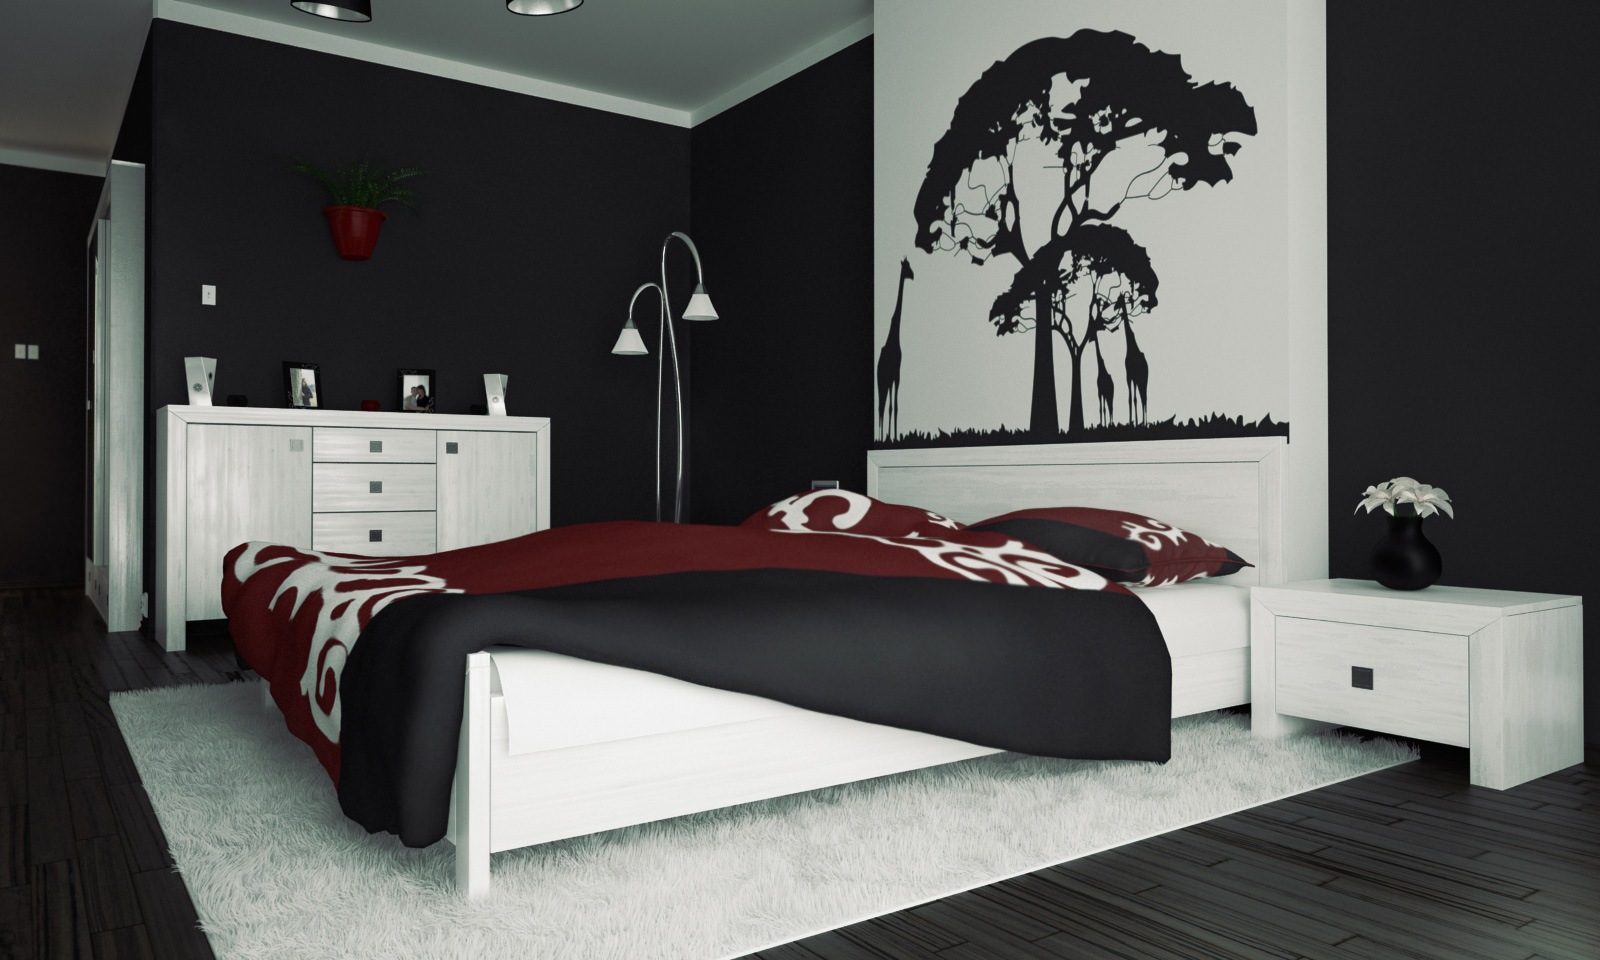 Desain Kamar Tidur Hitam Putih Desain Gambar Furniture Rumah